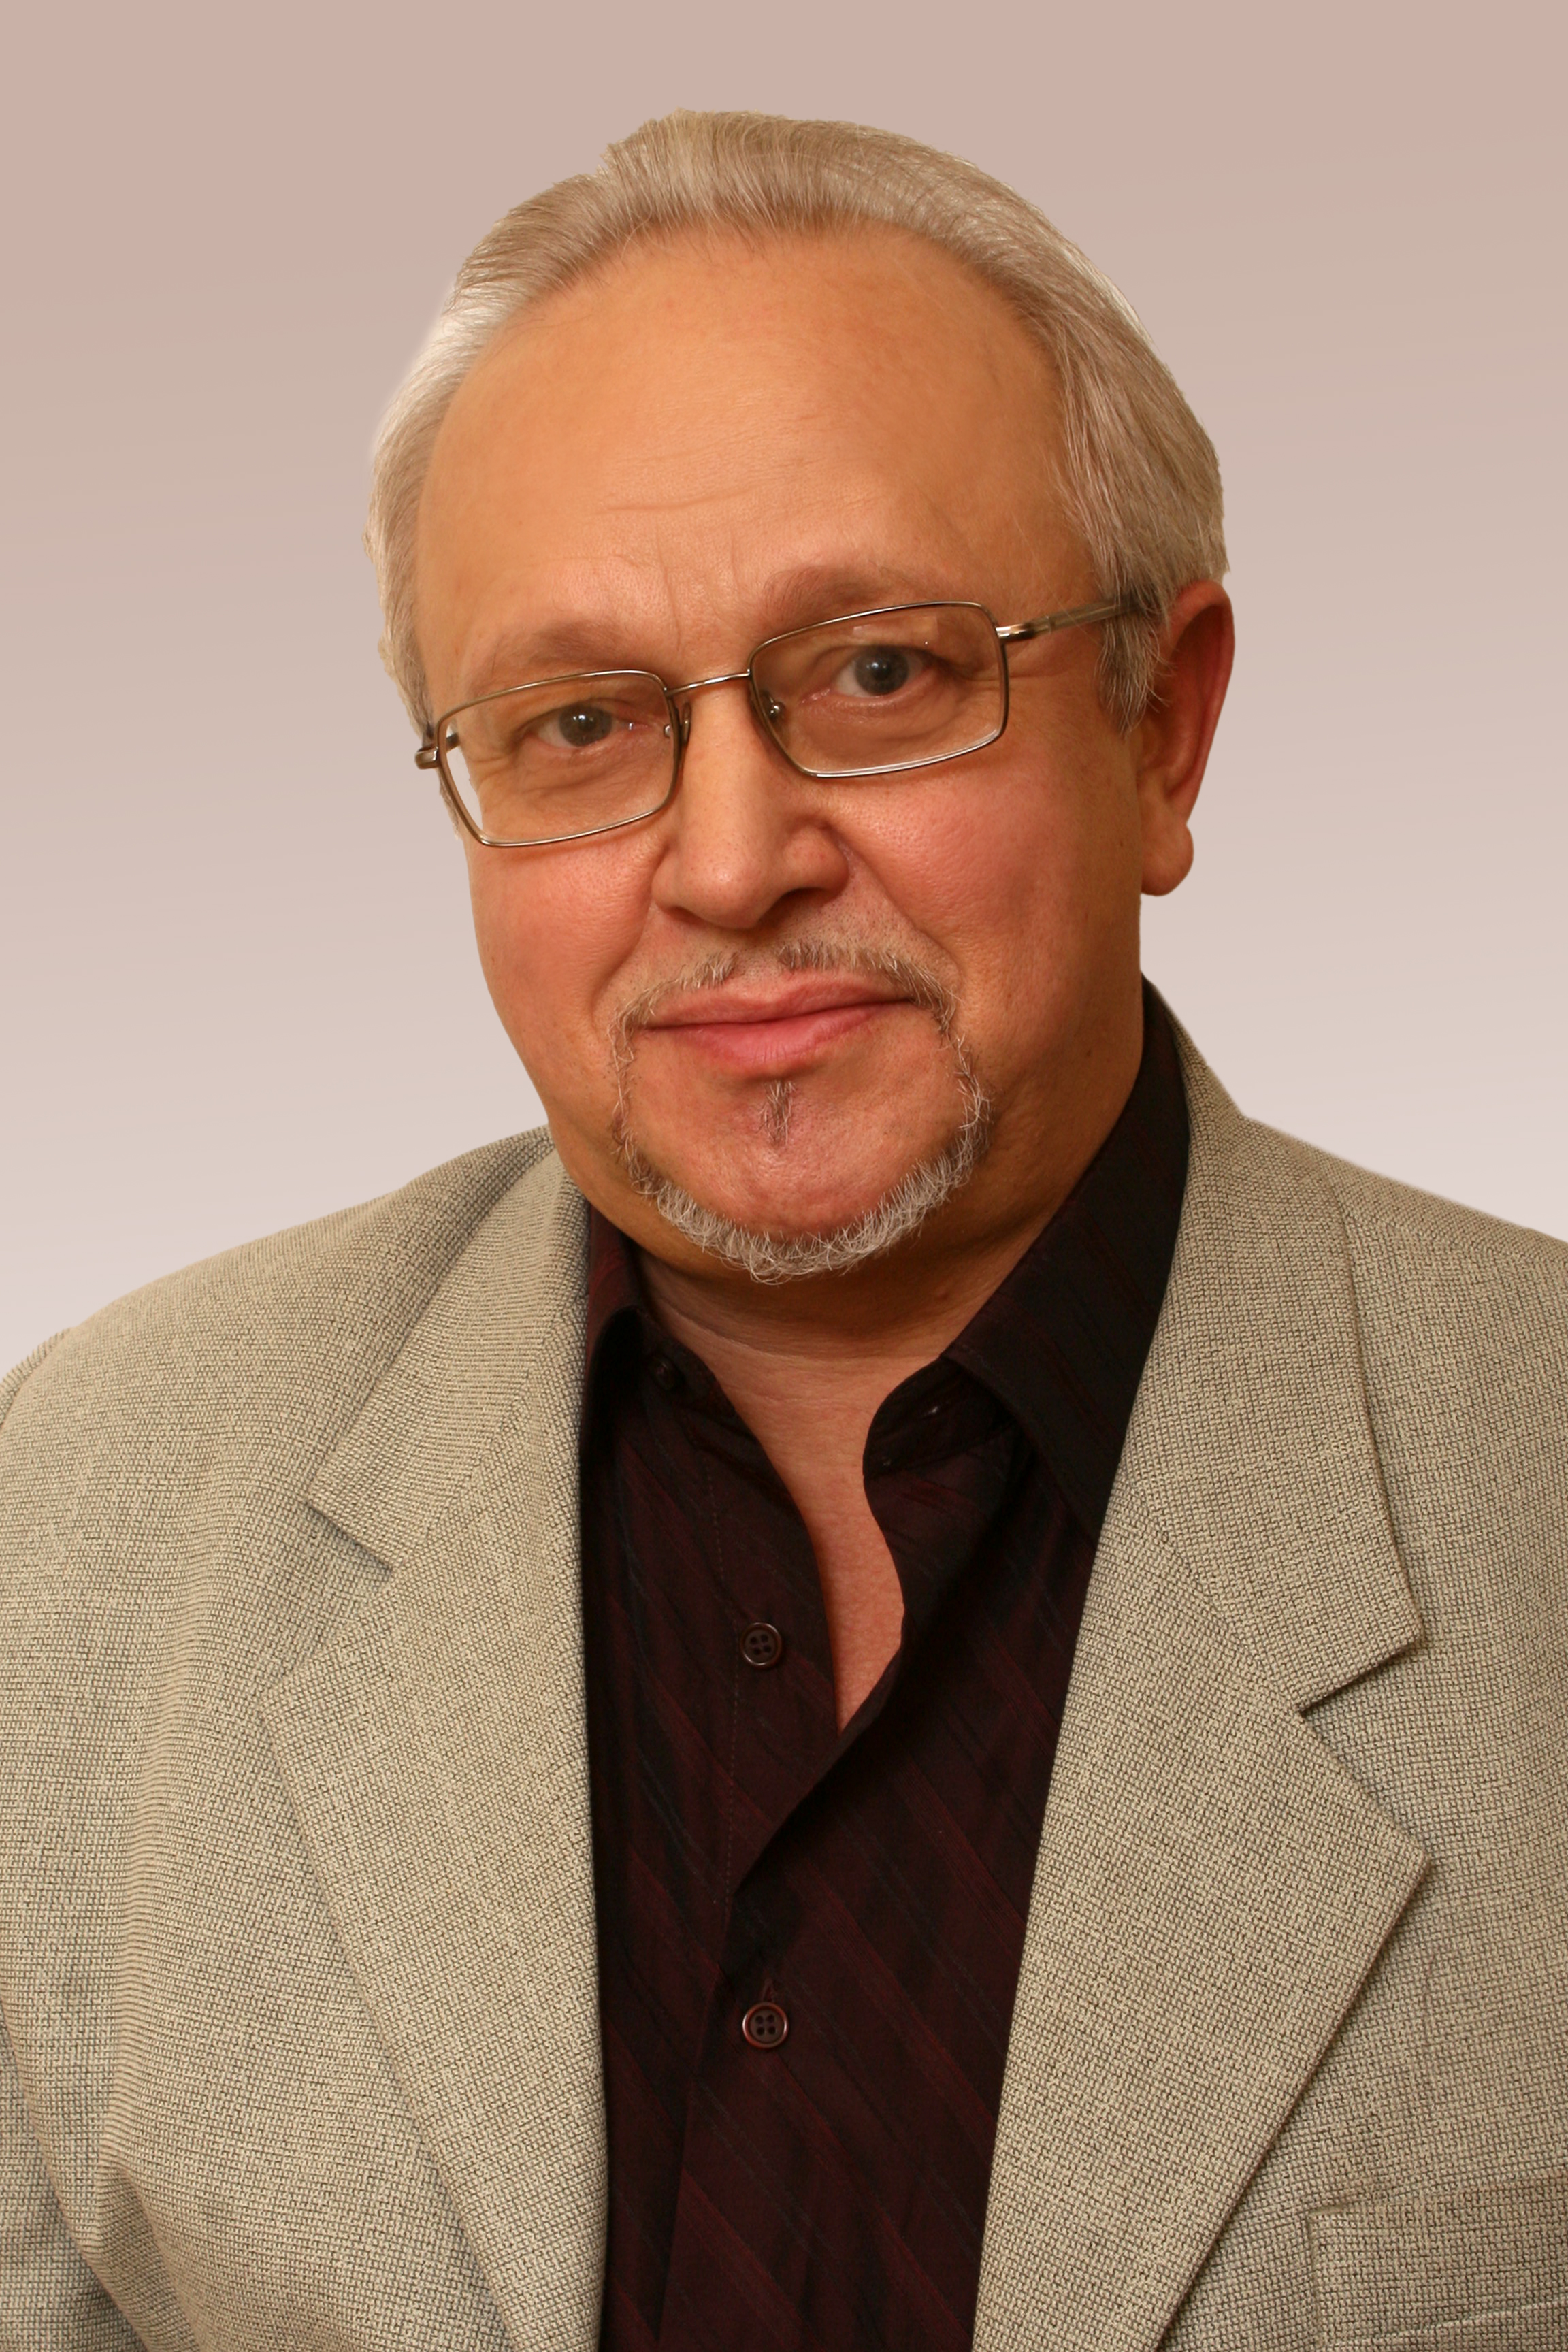             Кабрин Валерий Иванович
    